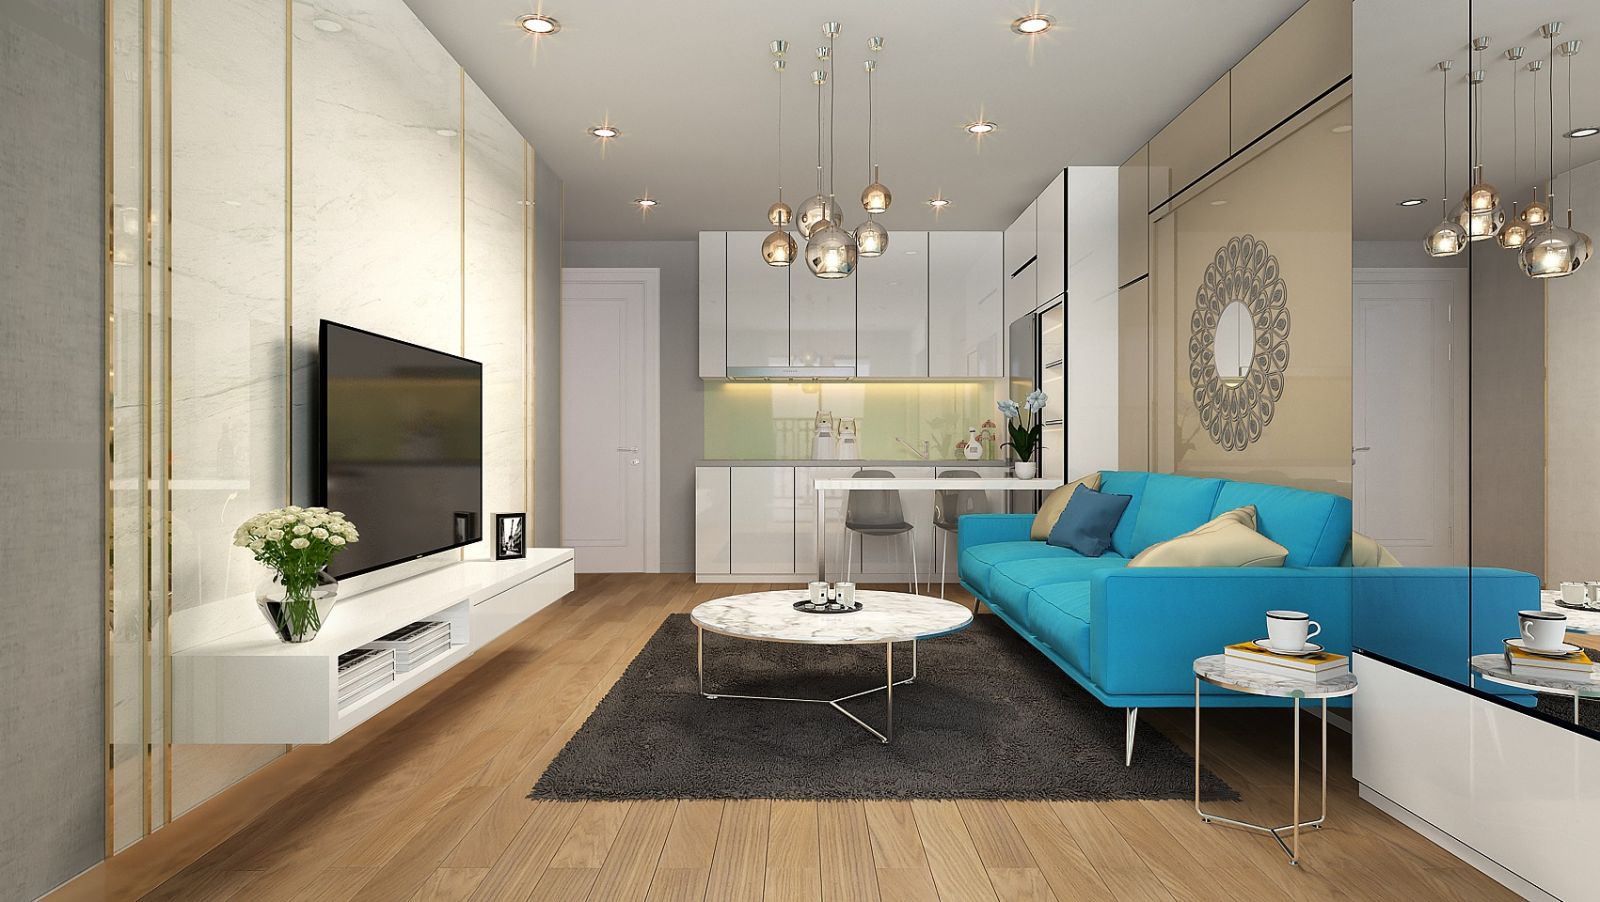 Các căn hộ được thiết kế thông minh, tận dụng tối đa không gian sử dụng chính là điểm mạnh của loại hình căn hộ LIMO